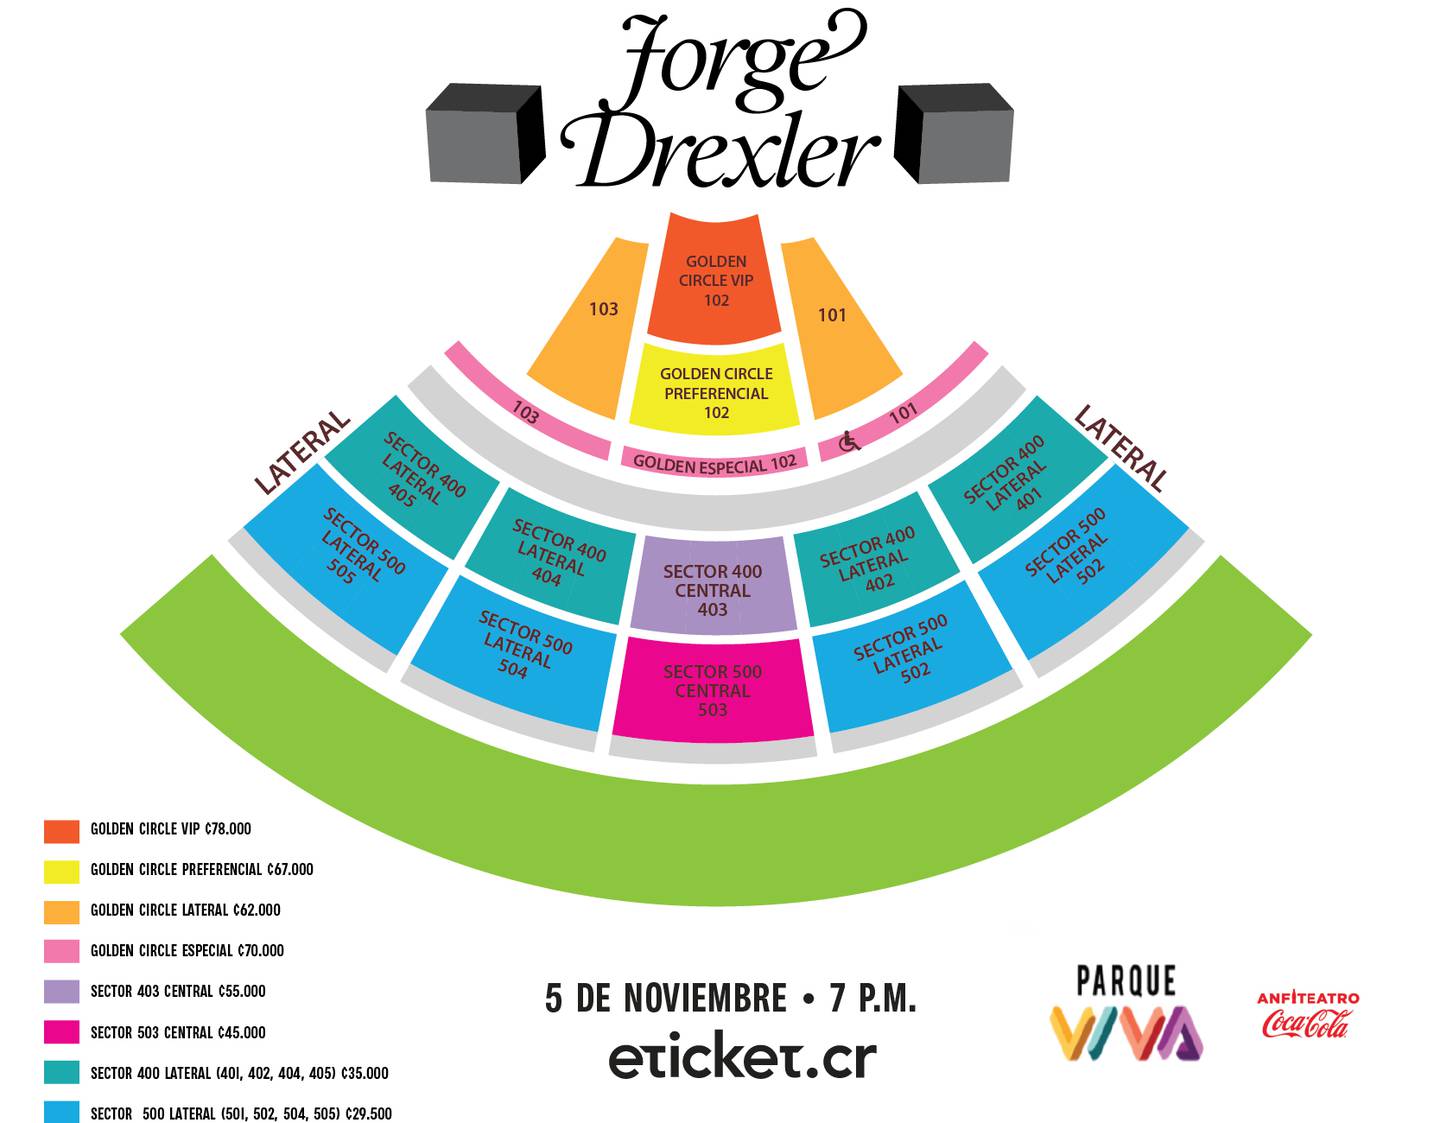 Este es el plano de asientos por localidades para el concierto de Jorge Drexler. Foto: Cortesía de la productora